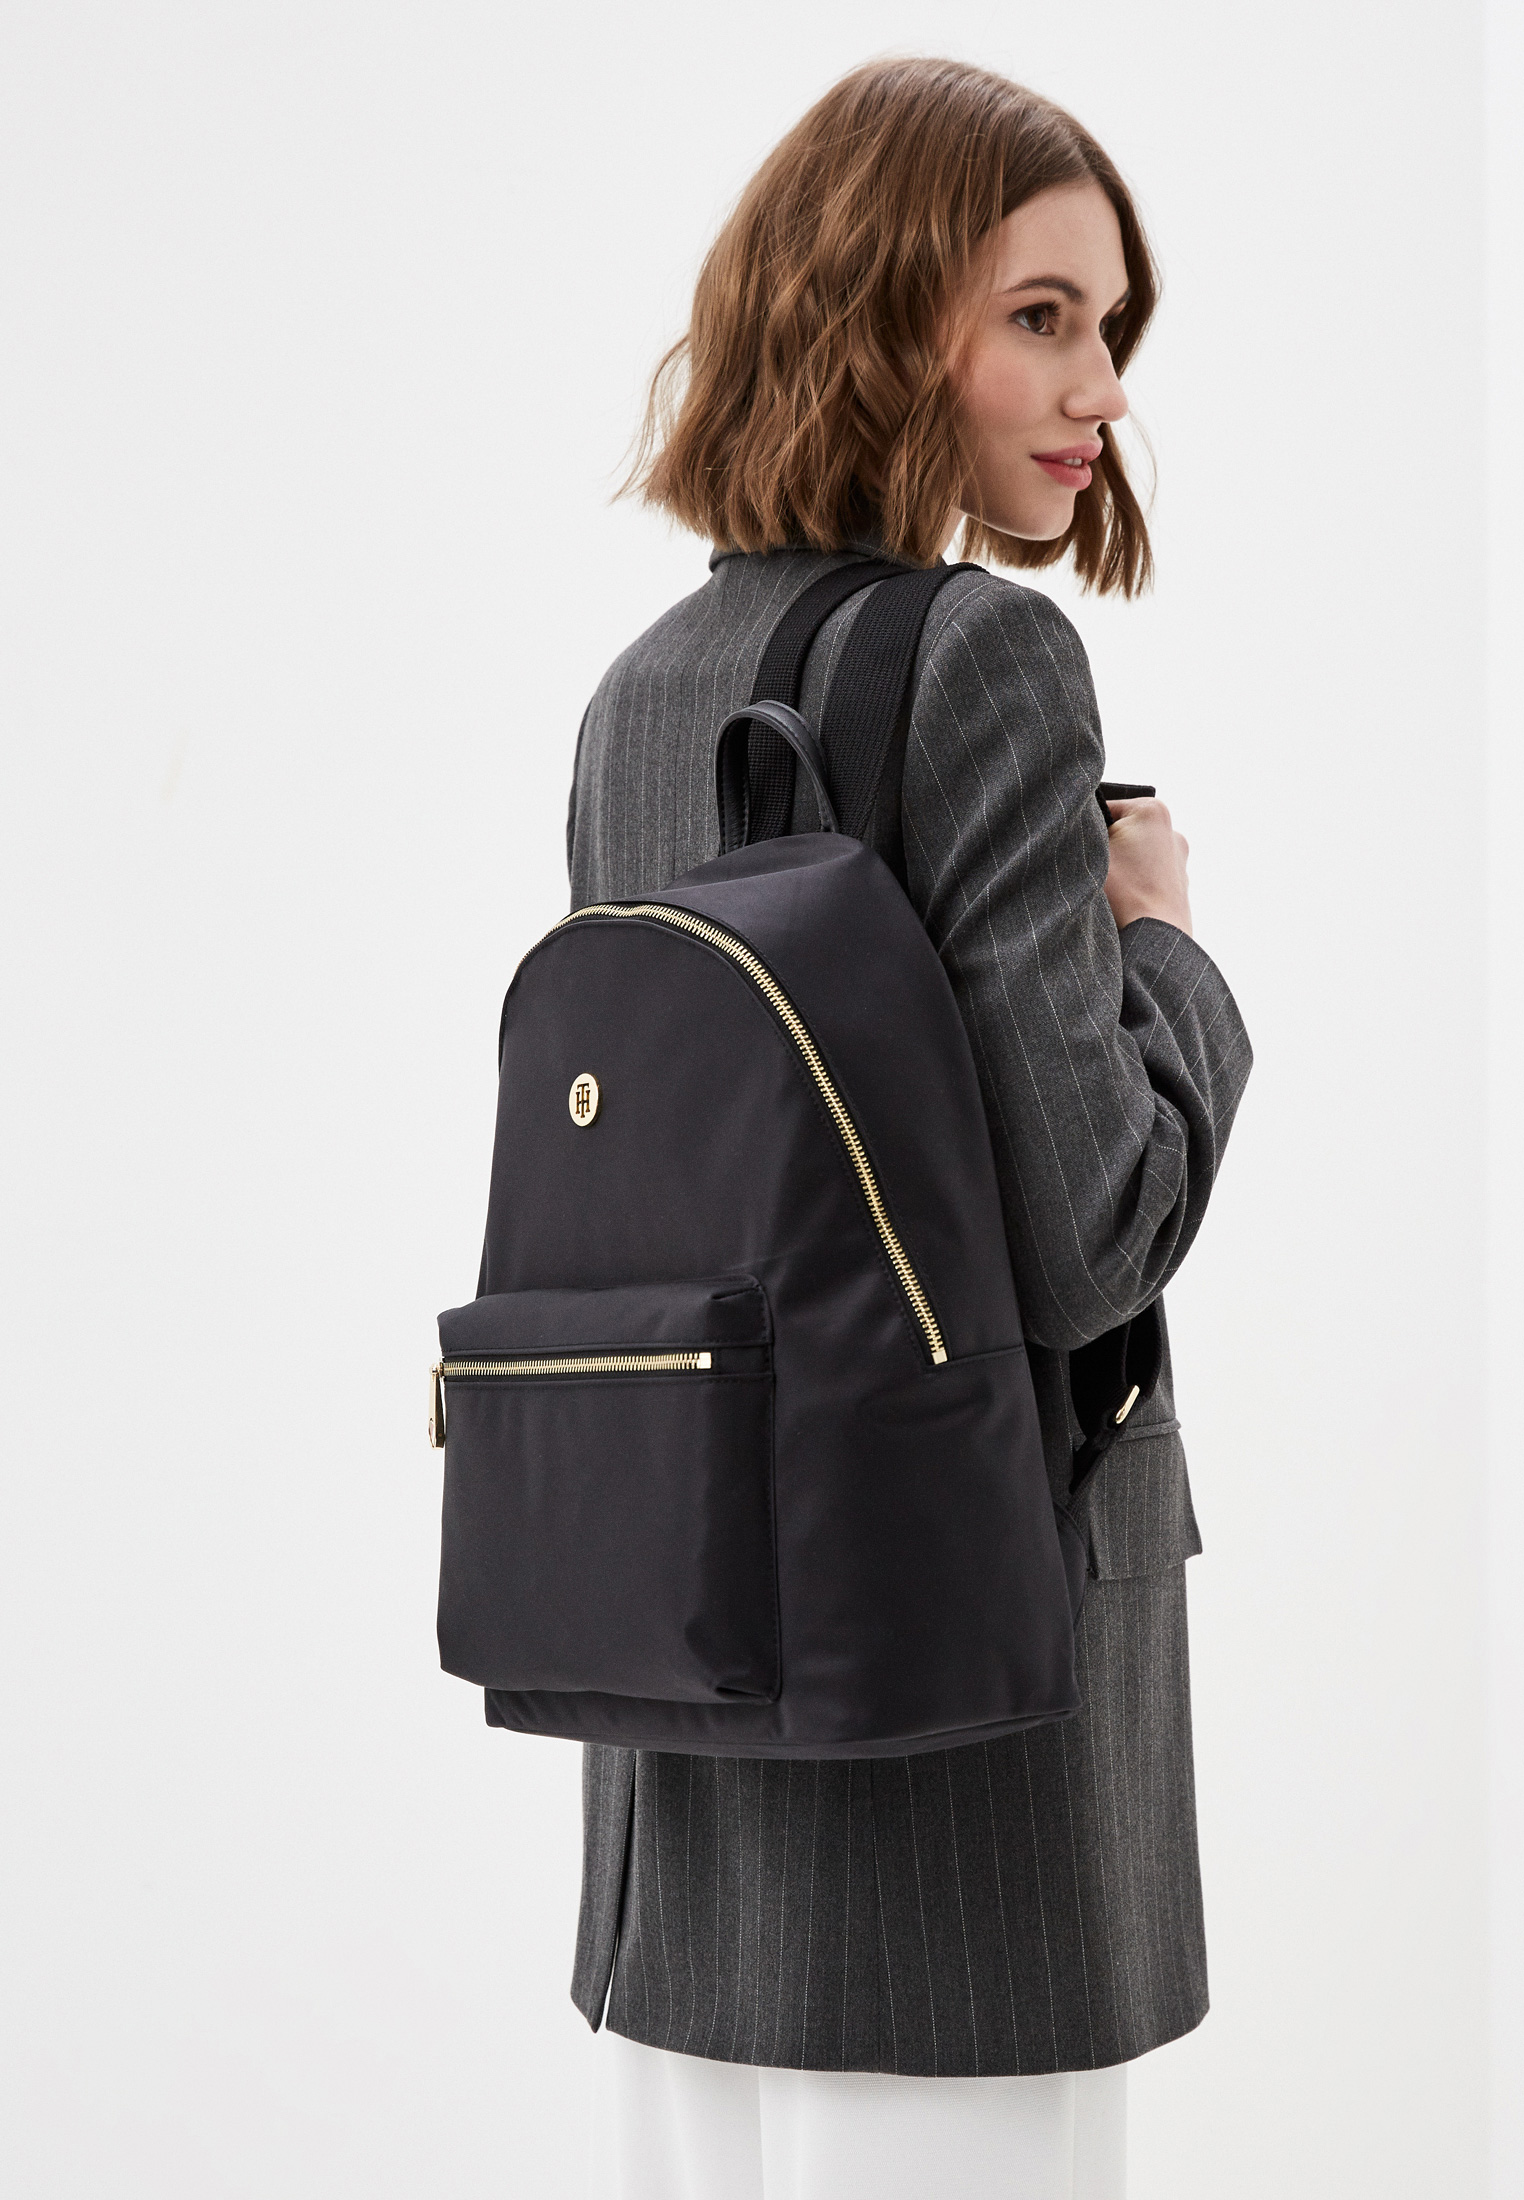 Городской рюкзак женский Tommy Hilfiger (Томми Хилфигер) AW0AW09693 внешний  материал нейлон, полиэстер; цвет черный купить за 10390 руб.